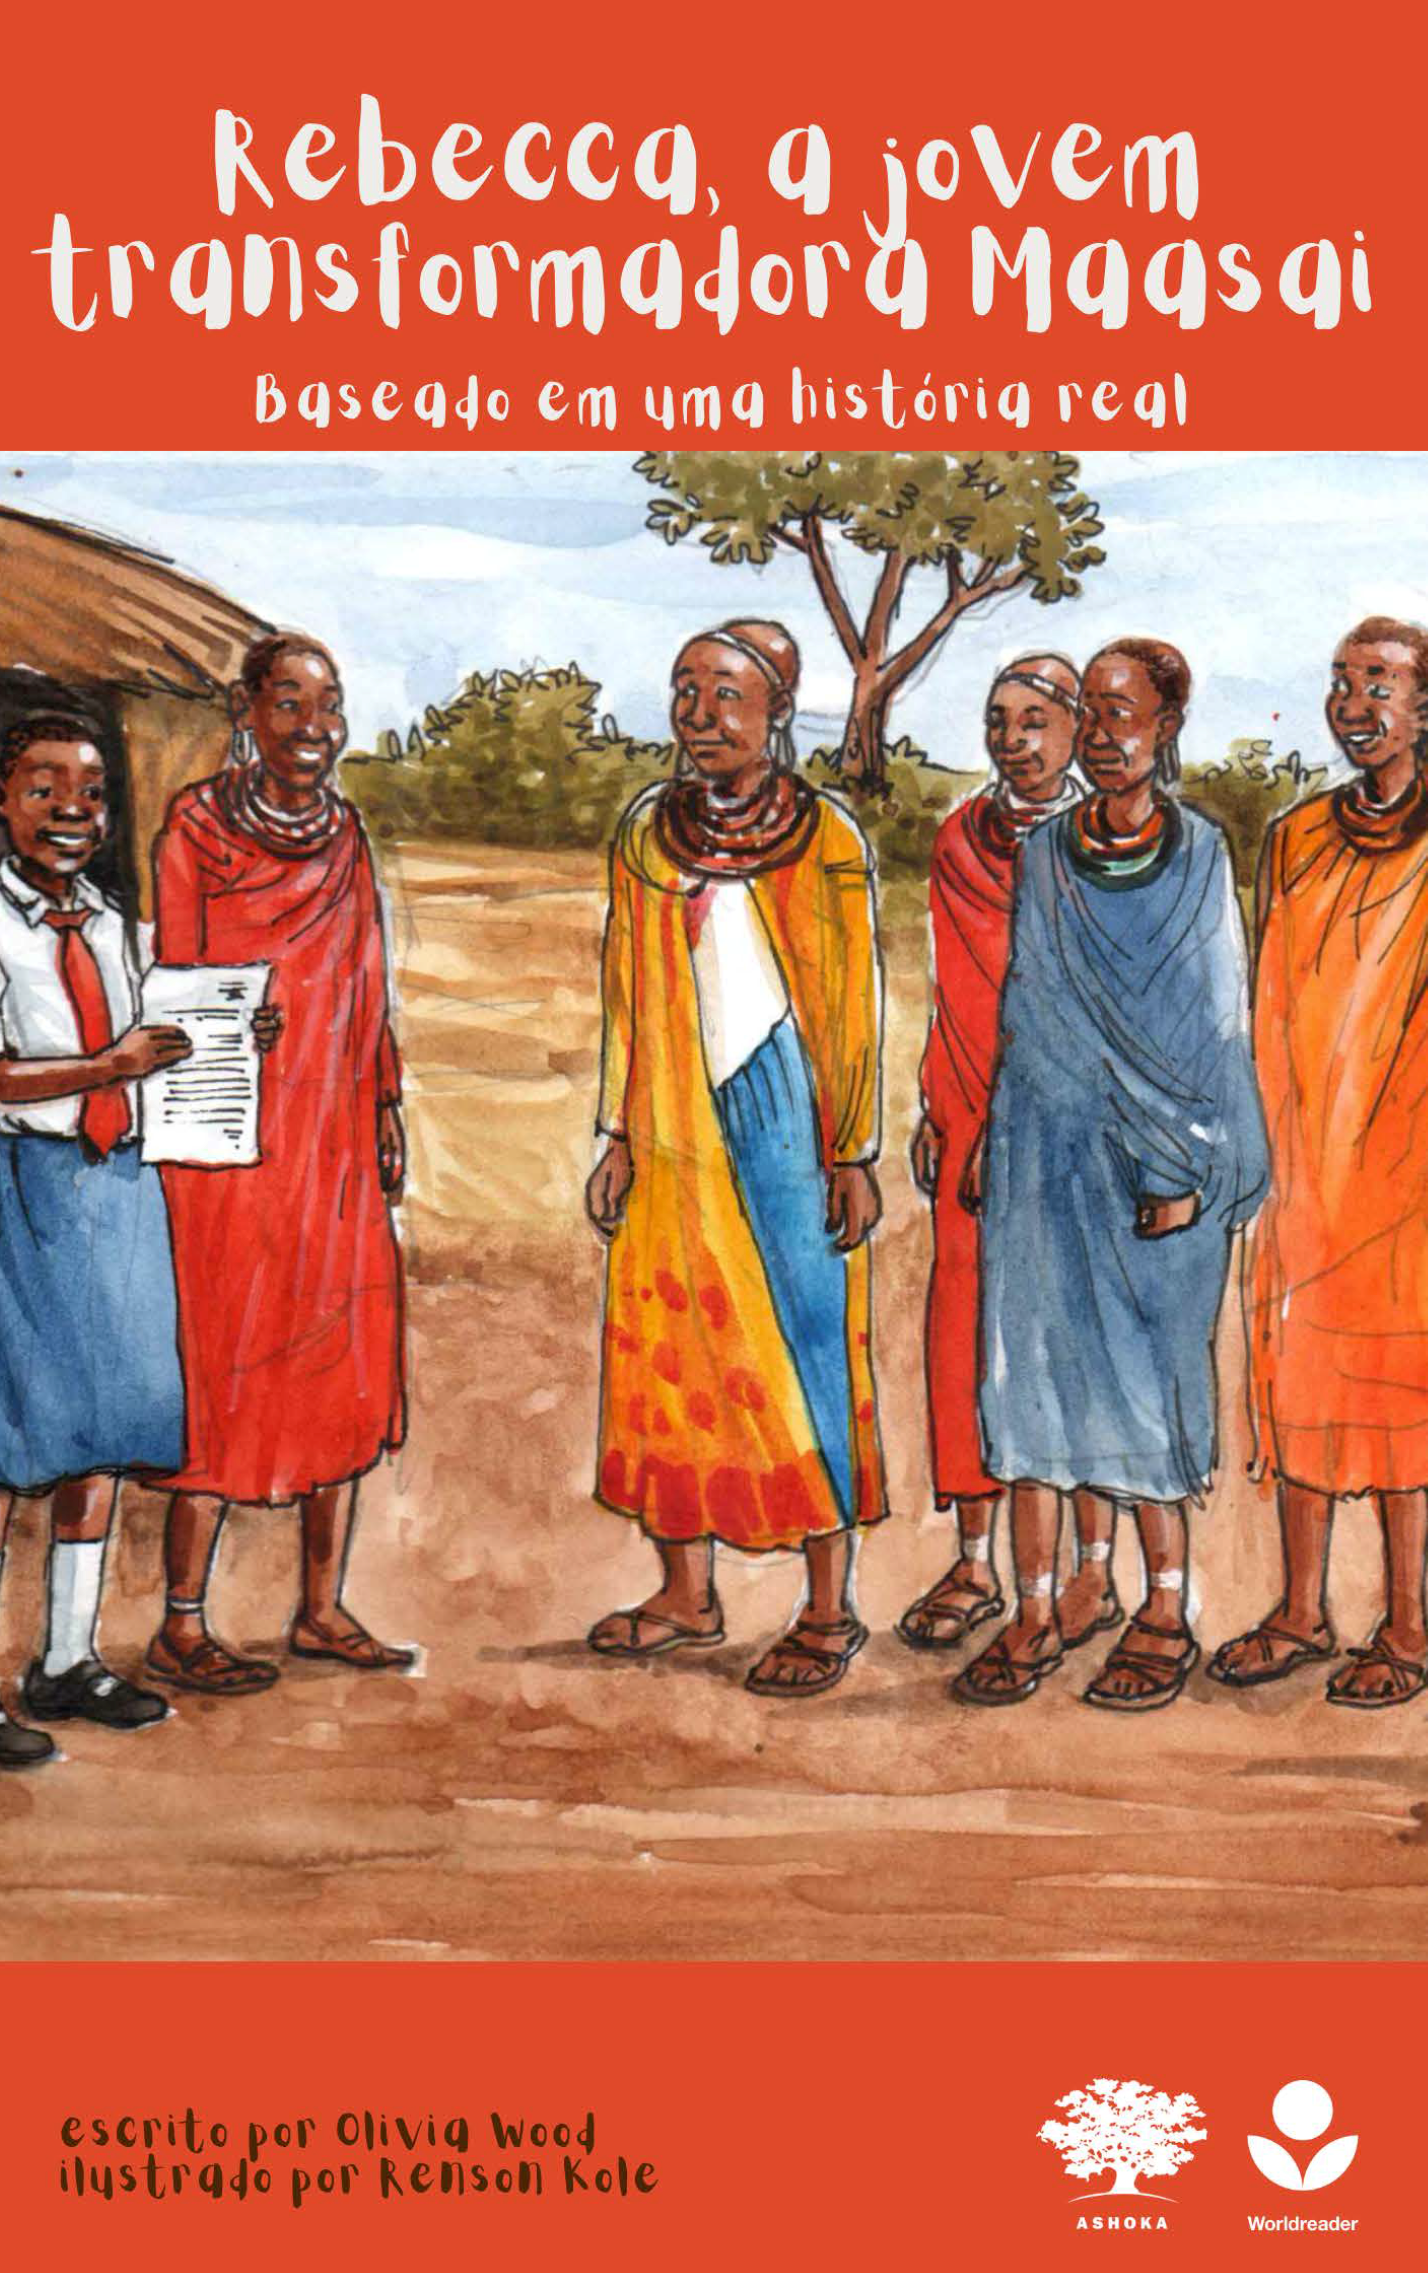 Capa do livro "Rebecca, a jovem transformadora Maasai". No topo, há uma faixa vermelha com o título do livro. Abaixo, o escrito "Baseado em uma história real". Há uma ilustração com um grupo de pessoas Maasai ao ar livre. Elas estão vestindo roupas e adereços coloridos. Na parte inferior, há uma faixa vermelha com os logos da Ashoka e Worldreader no canto inferior direito